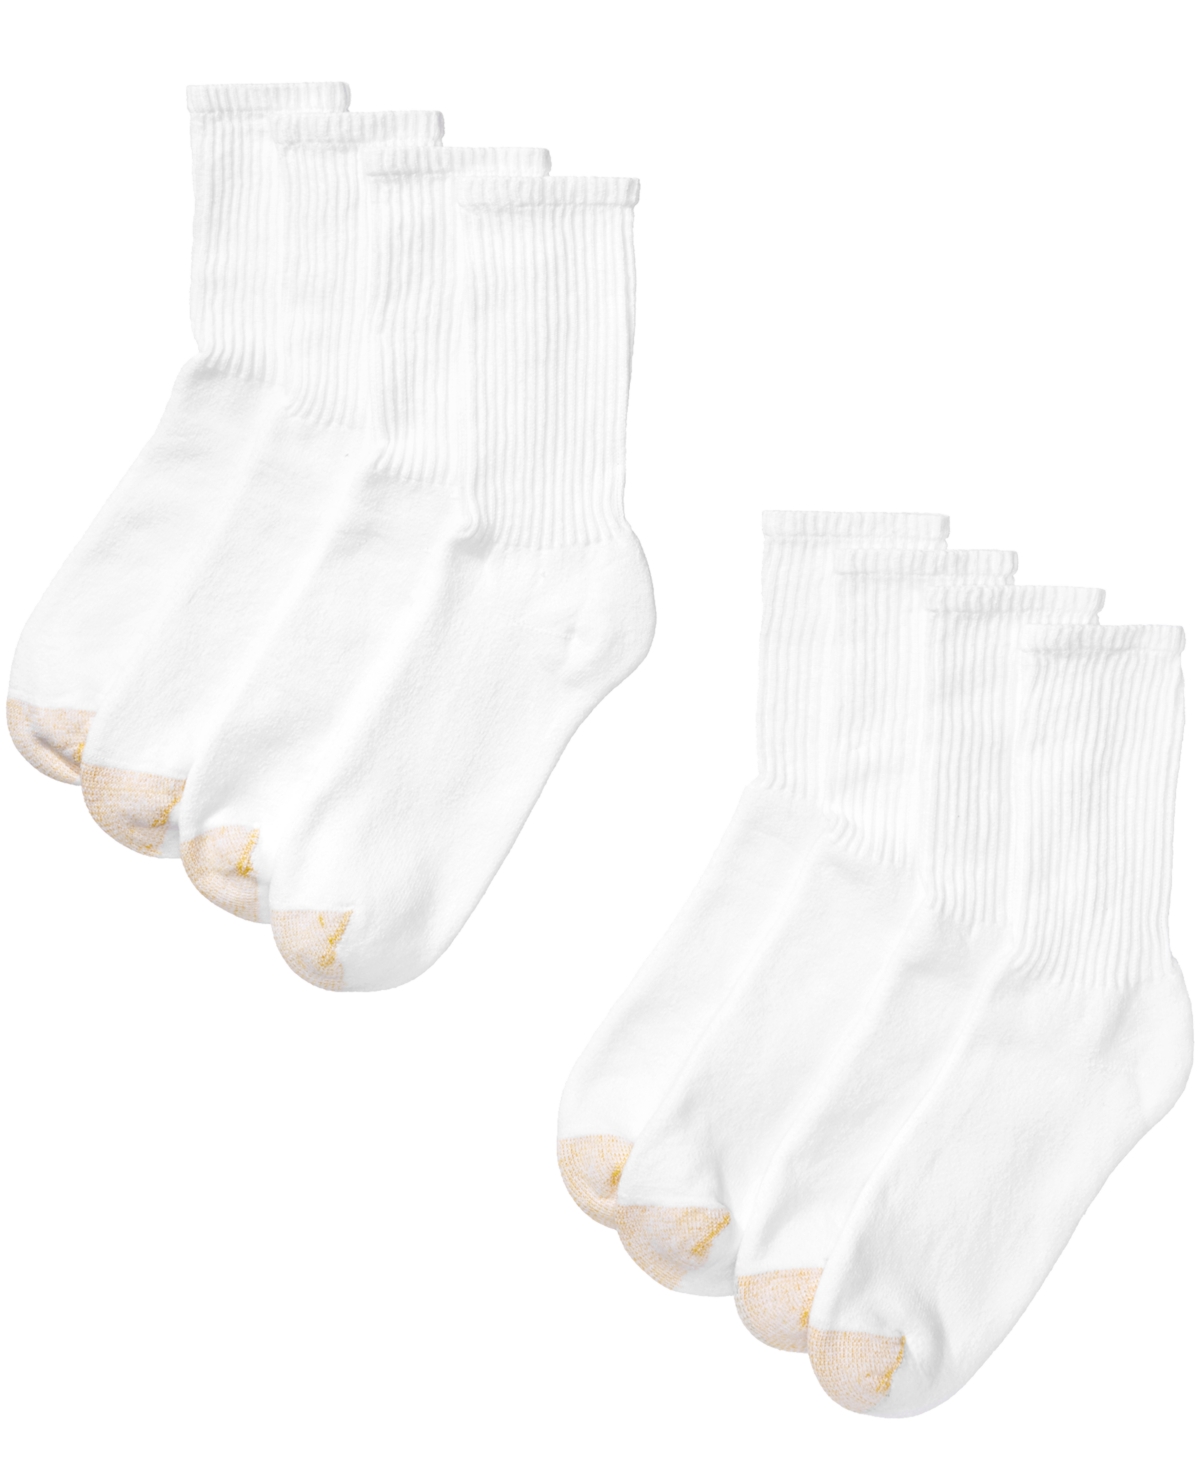 Men's 8 Pack Athletic Crew Socks - White